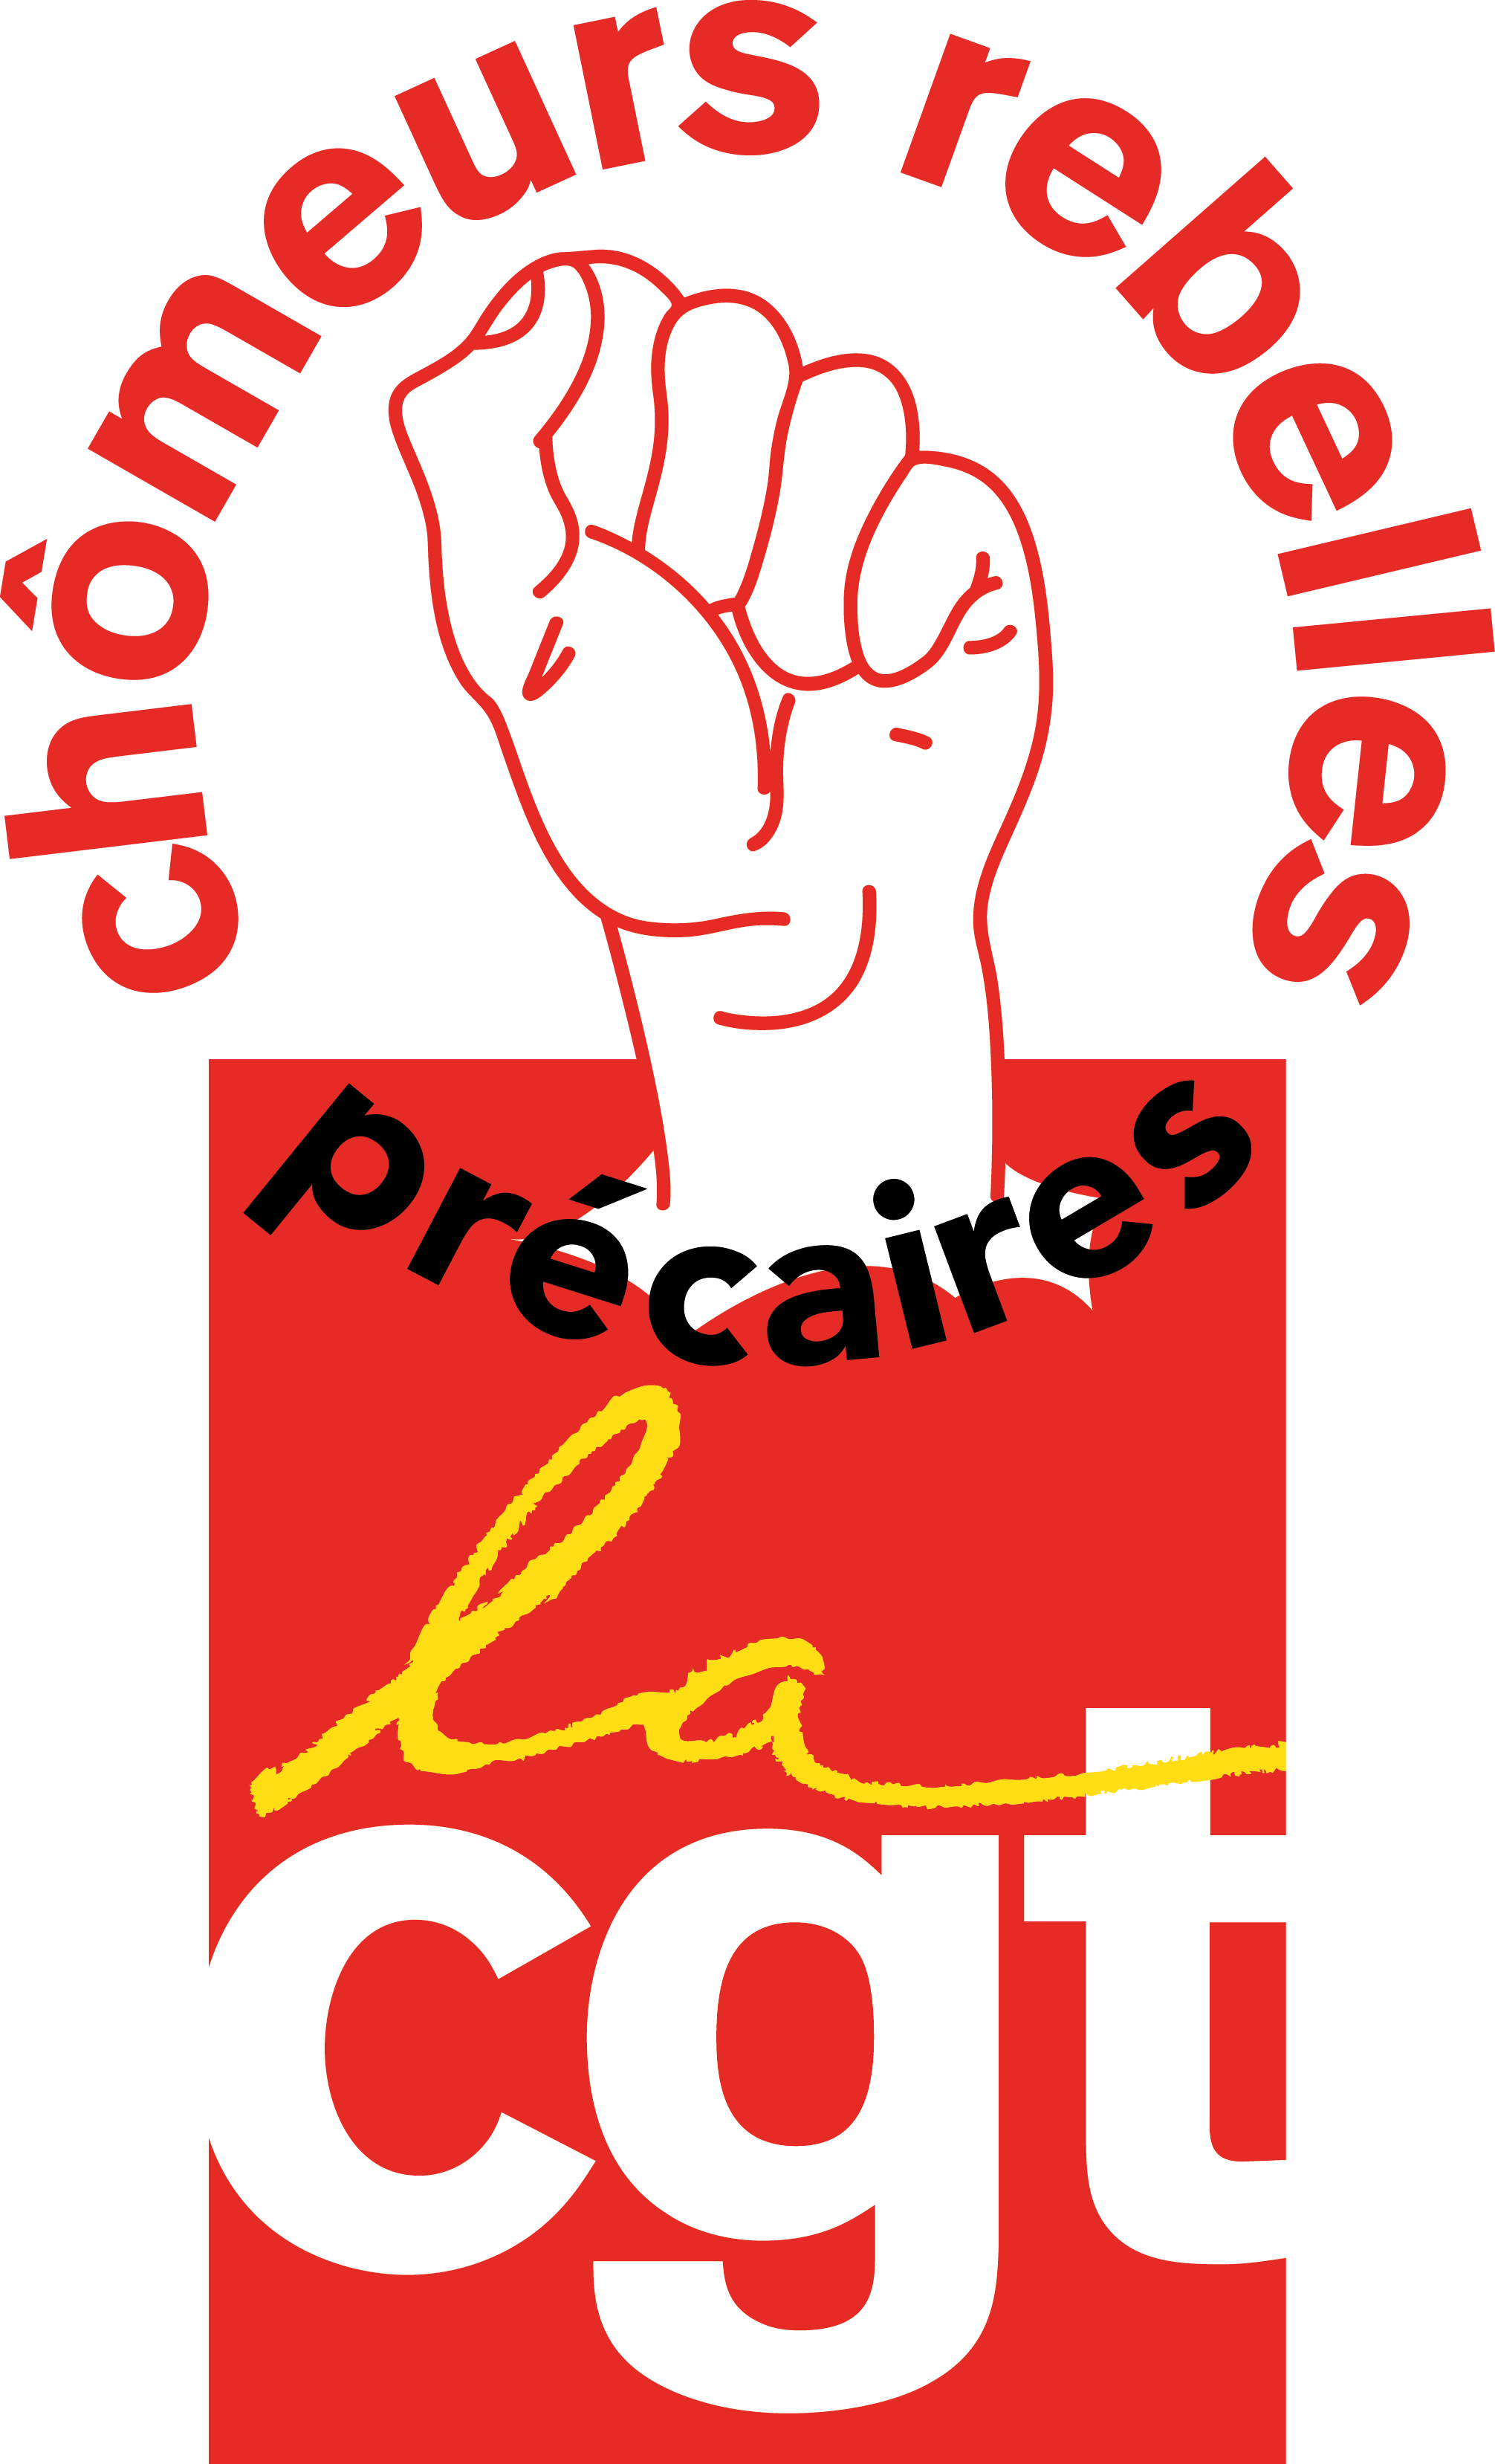 [7 octobre 2009] AC, APEIS, MNCP, CGT Chômeurs : Pour un grand rendez vous de mobilisation nationale !